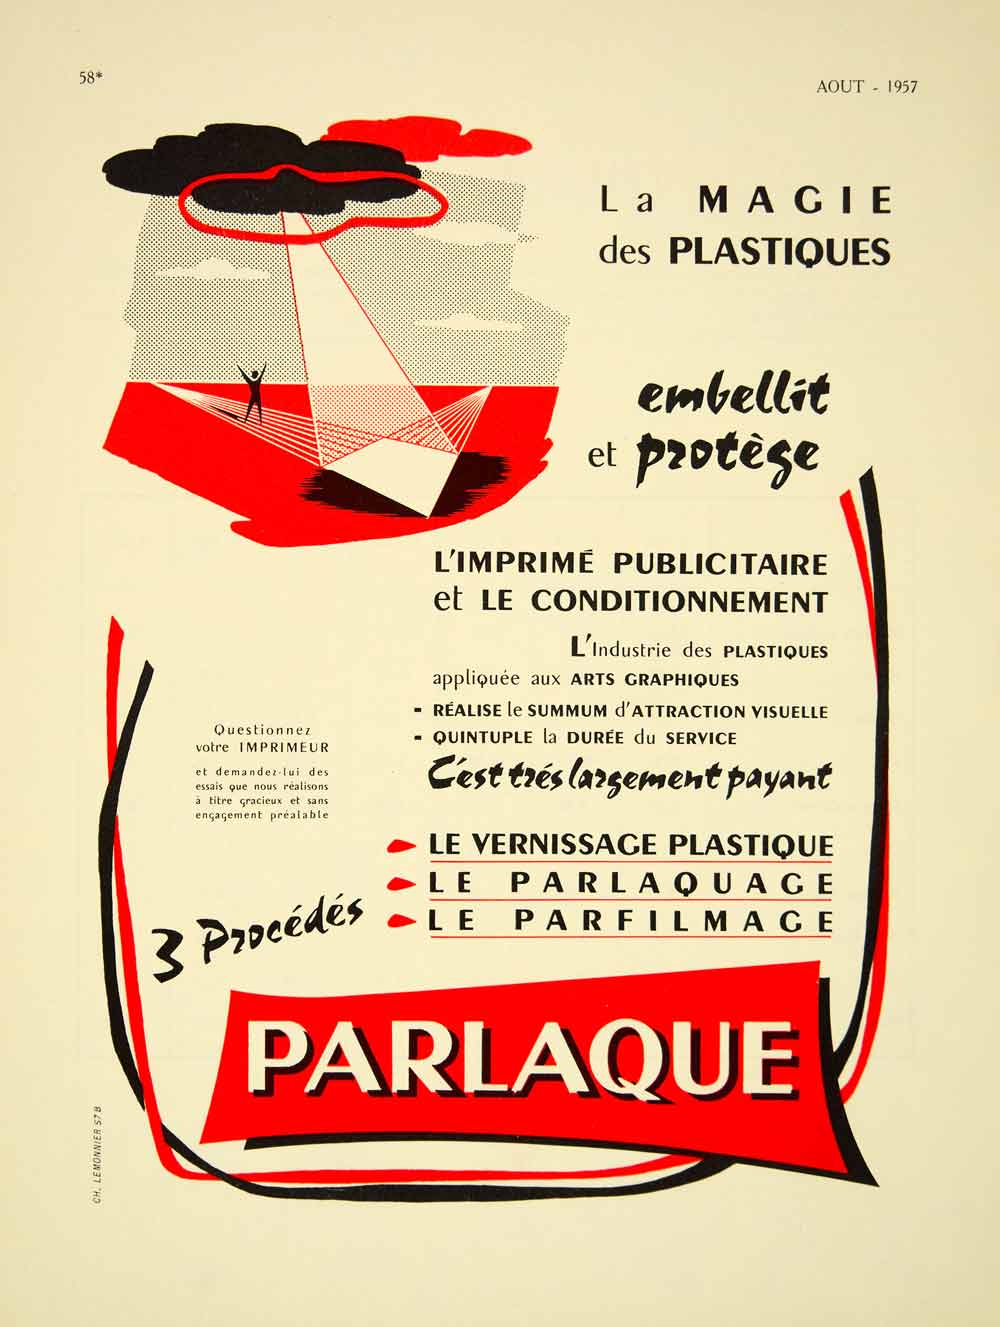 1957 Ad French Advertisement Plastic Parlaque Lemonnier Graphic Art VENA6